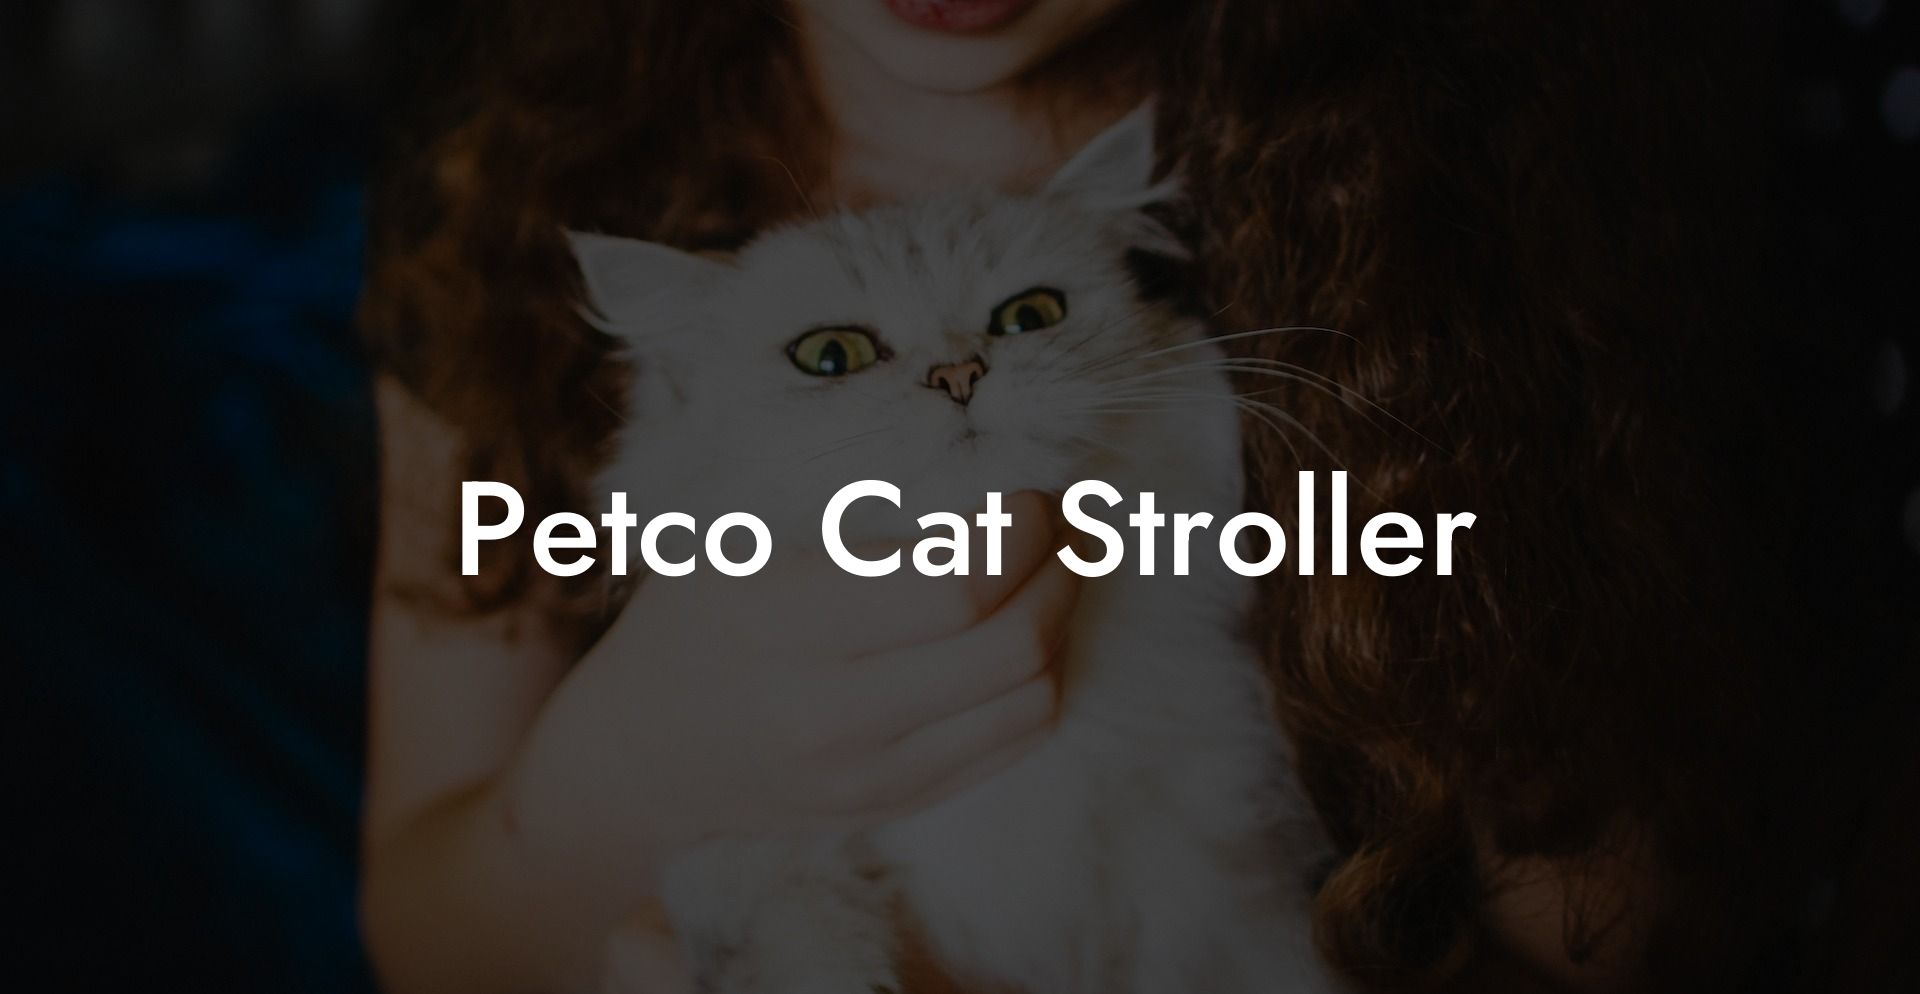 Petco Cat Stroller